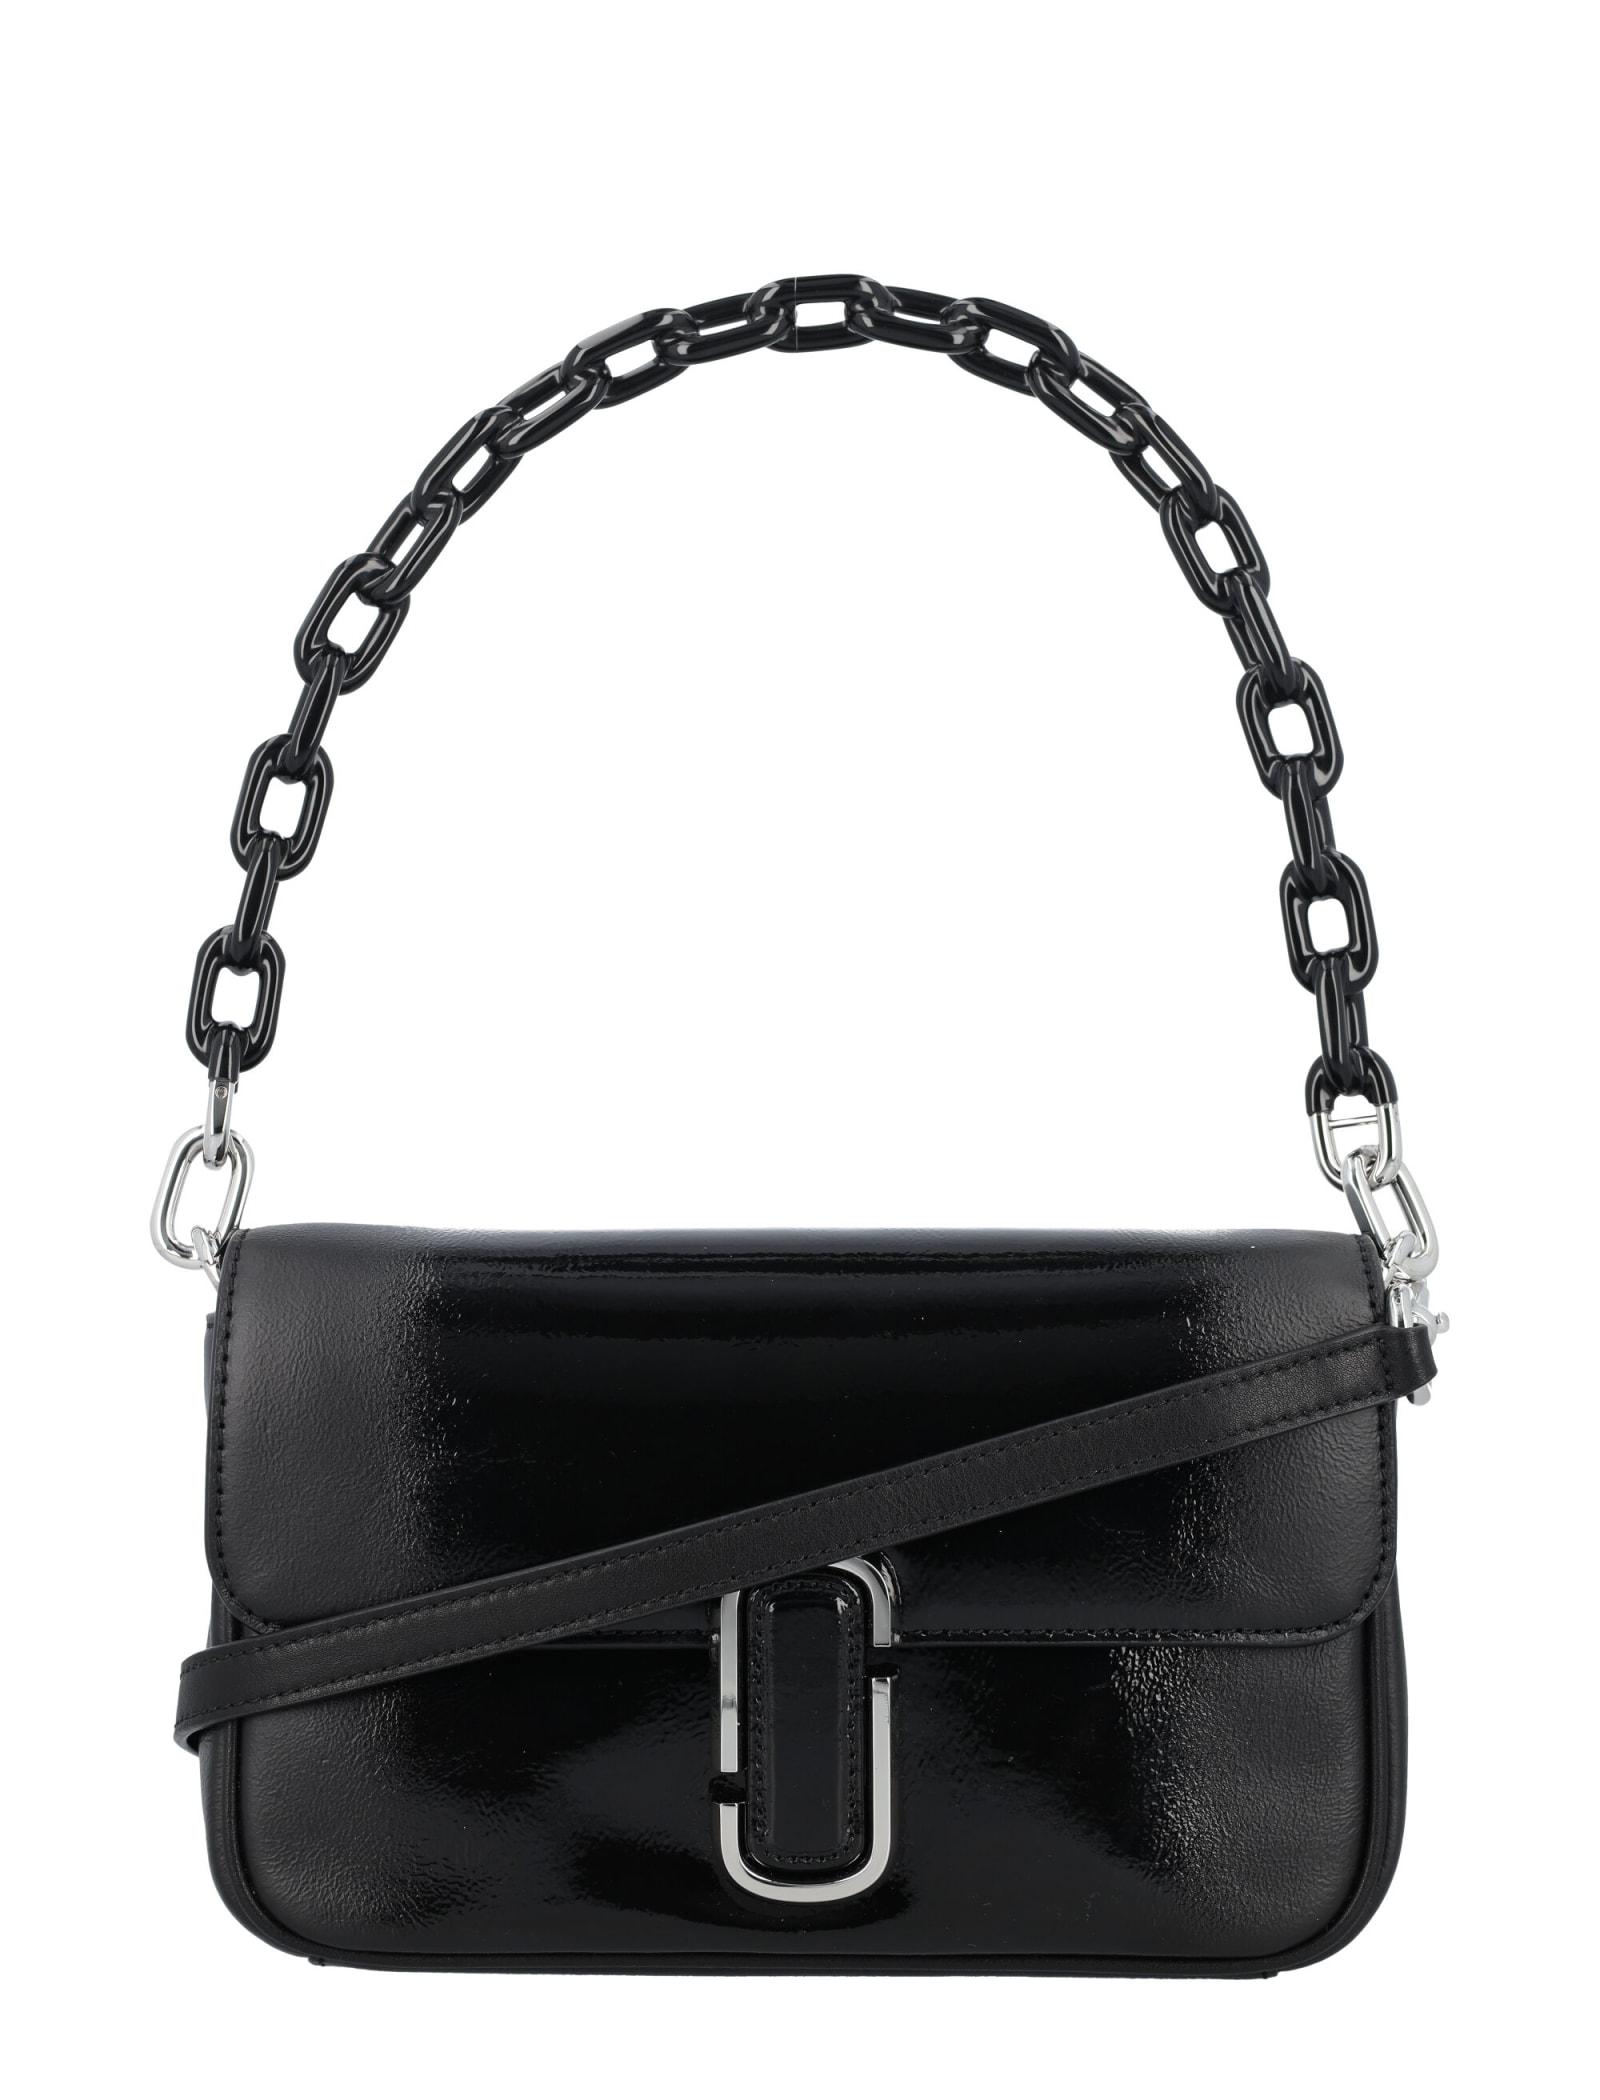 The J Marc Leather Shoulder Bag in Black - Marc Jacobs